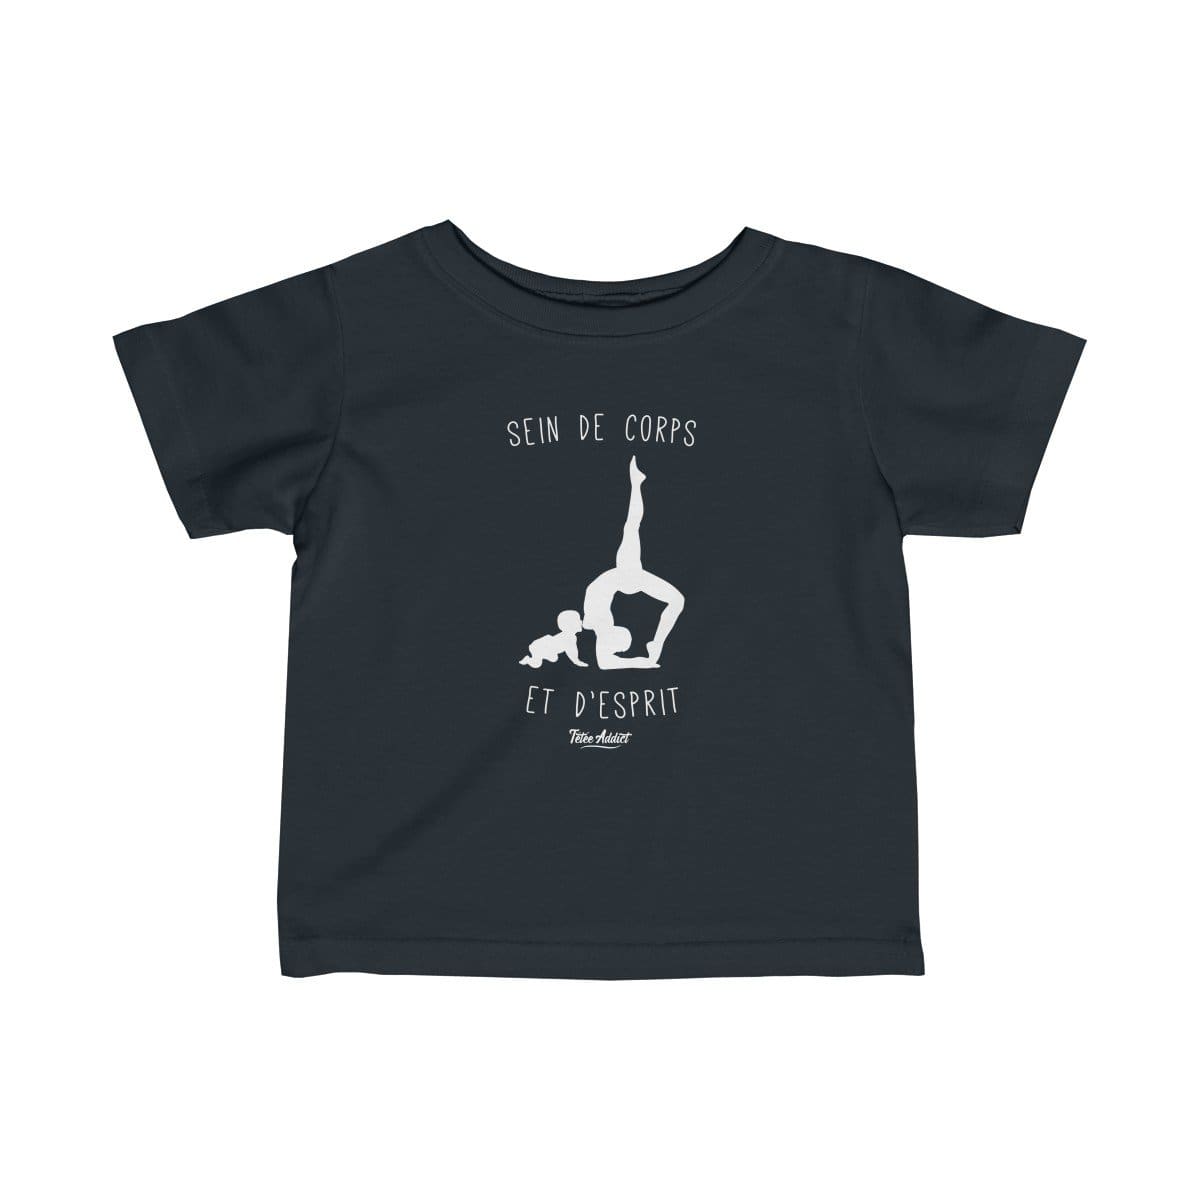 T-shirt Enfant Allaitement Humour Sein de Corps et dEsprit